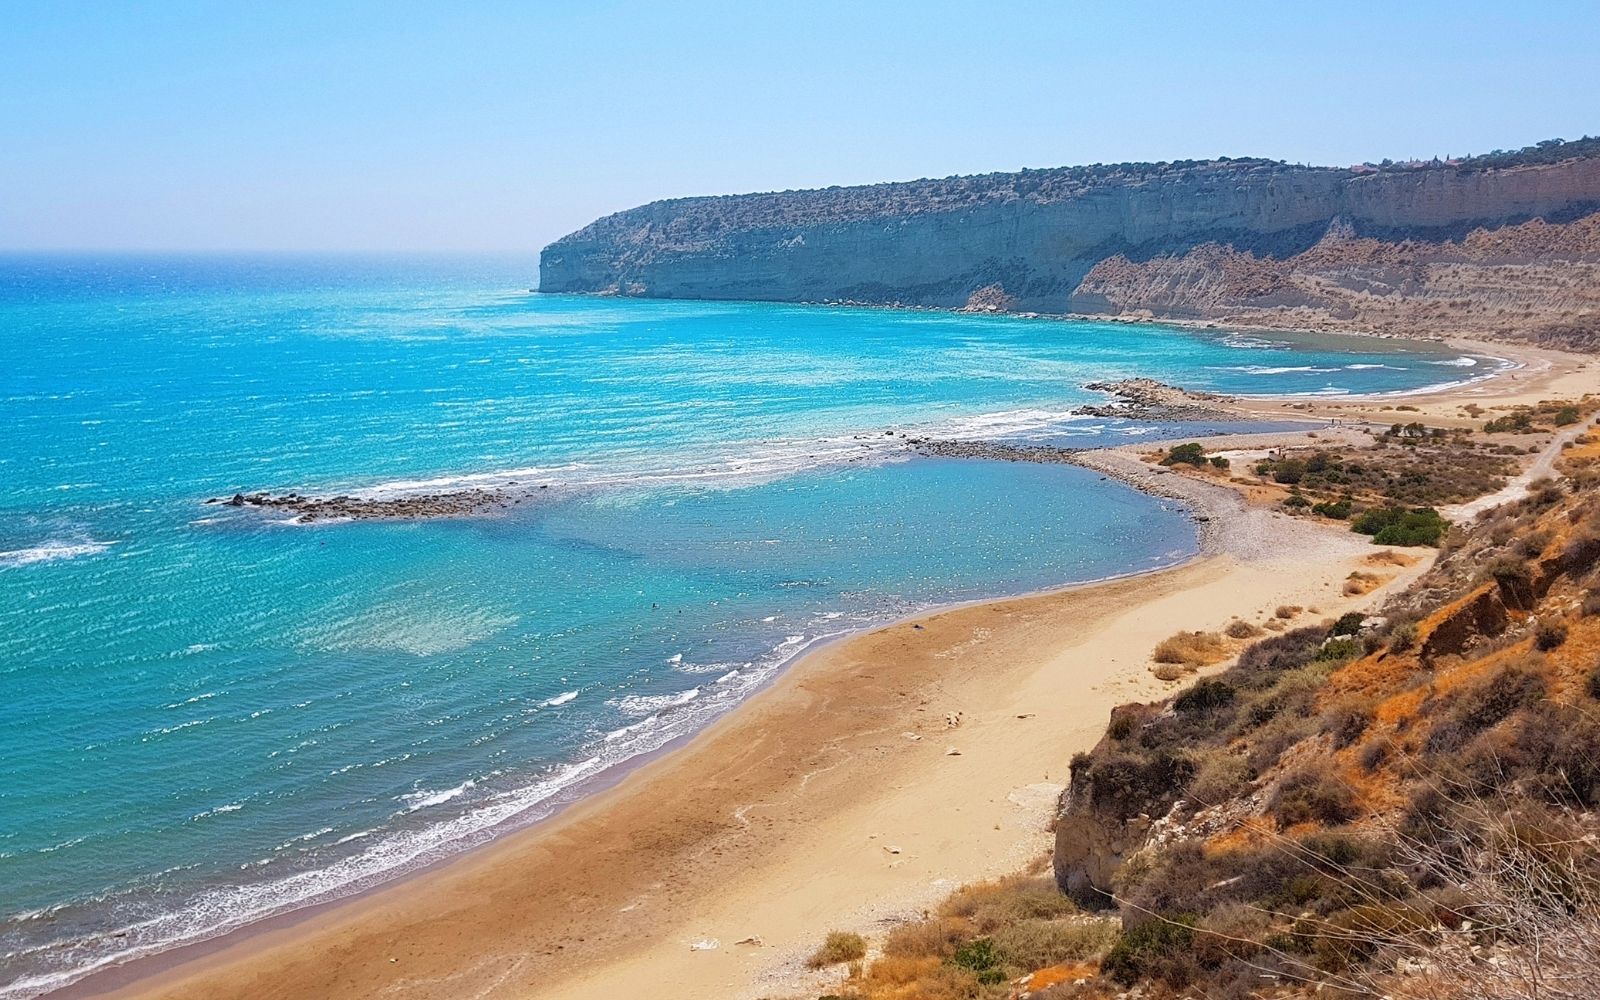 ZAPALO BEACH in Cyprus